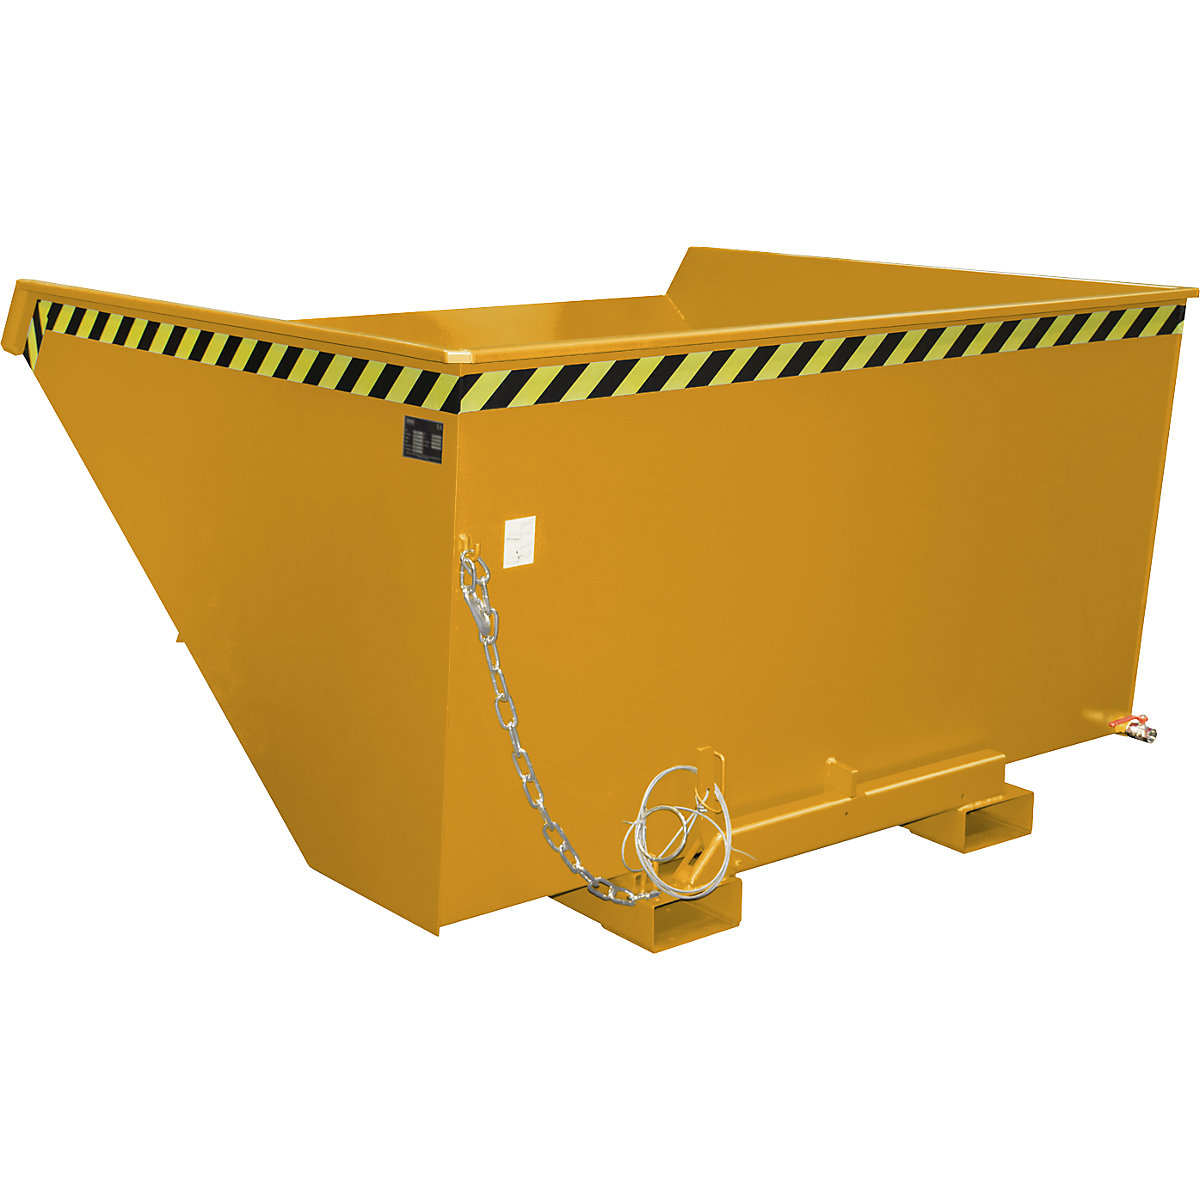 Conteneur pour copeaux EXPO-E – eurokraft pro, capacité 2,1 m³, orange jaune-3